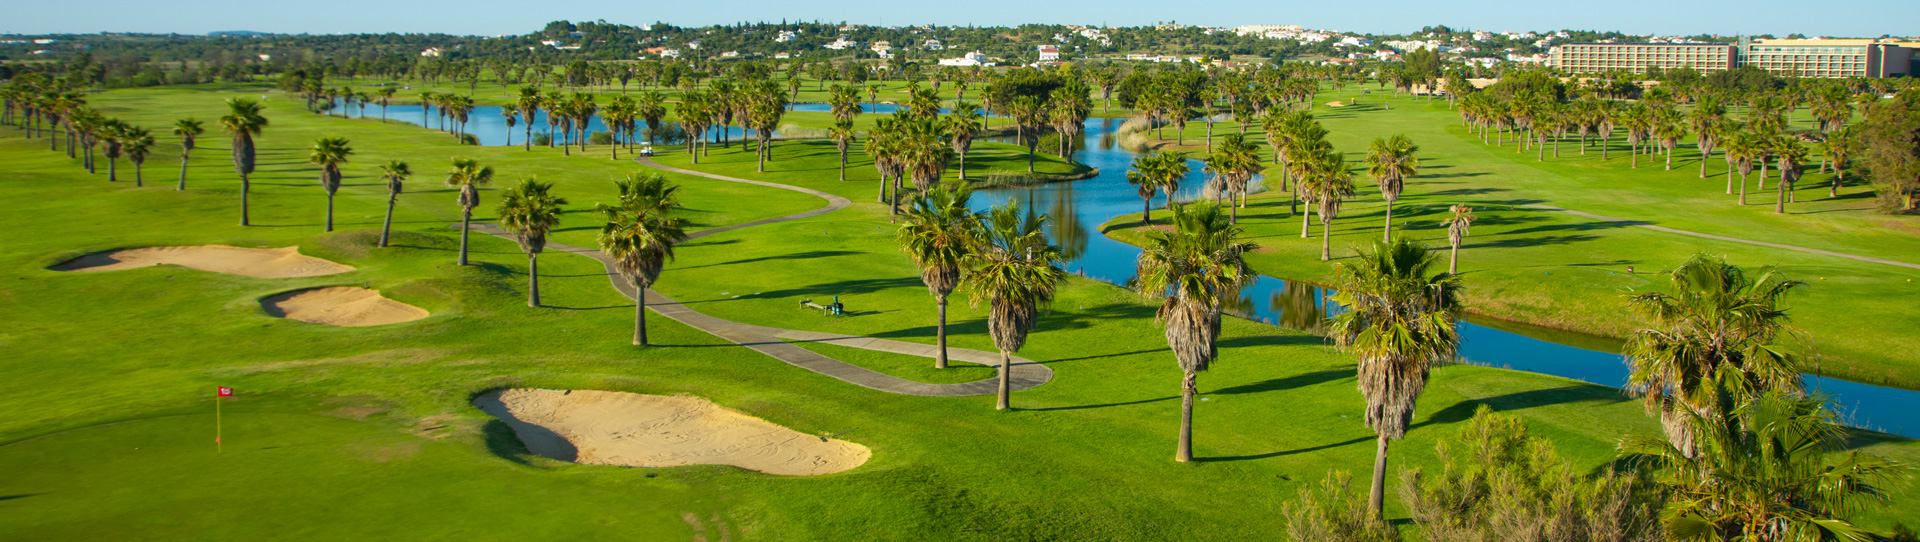 Portugal golf courses - Salgados Golf Course - Photo 2